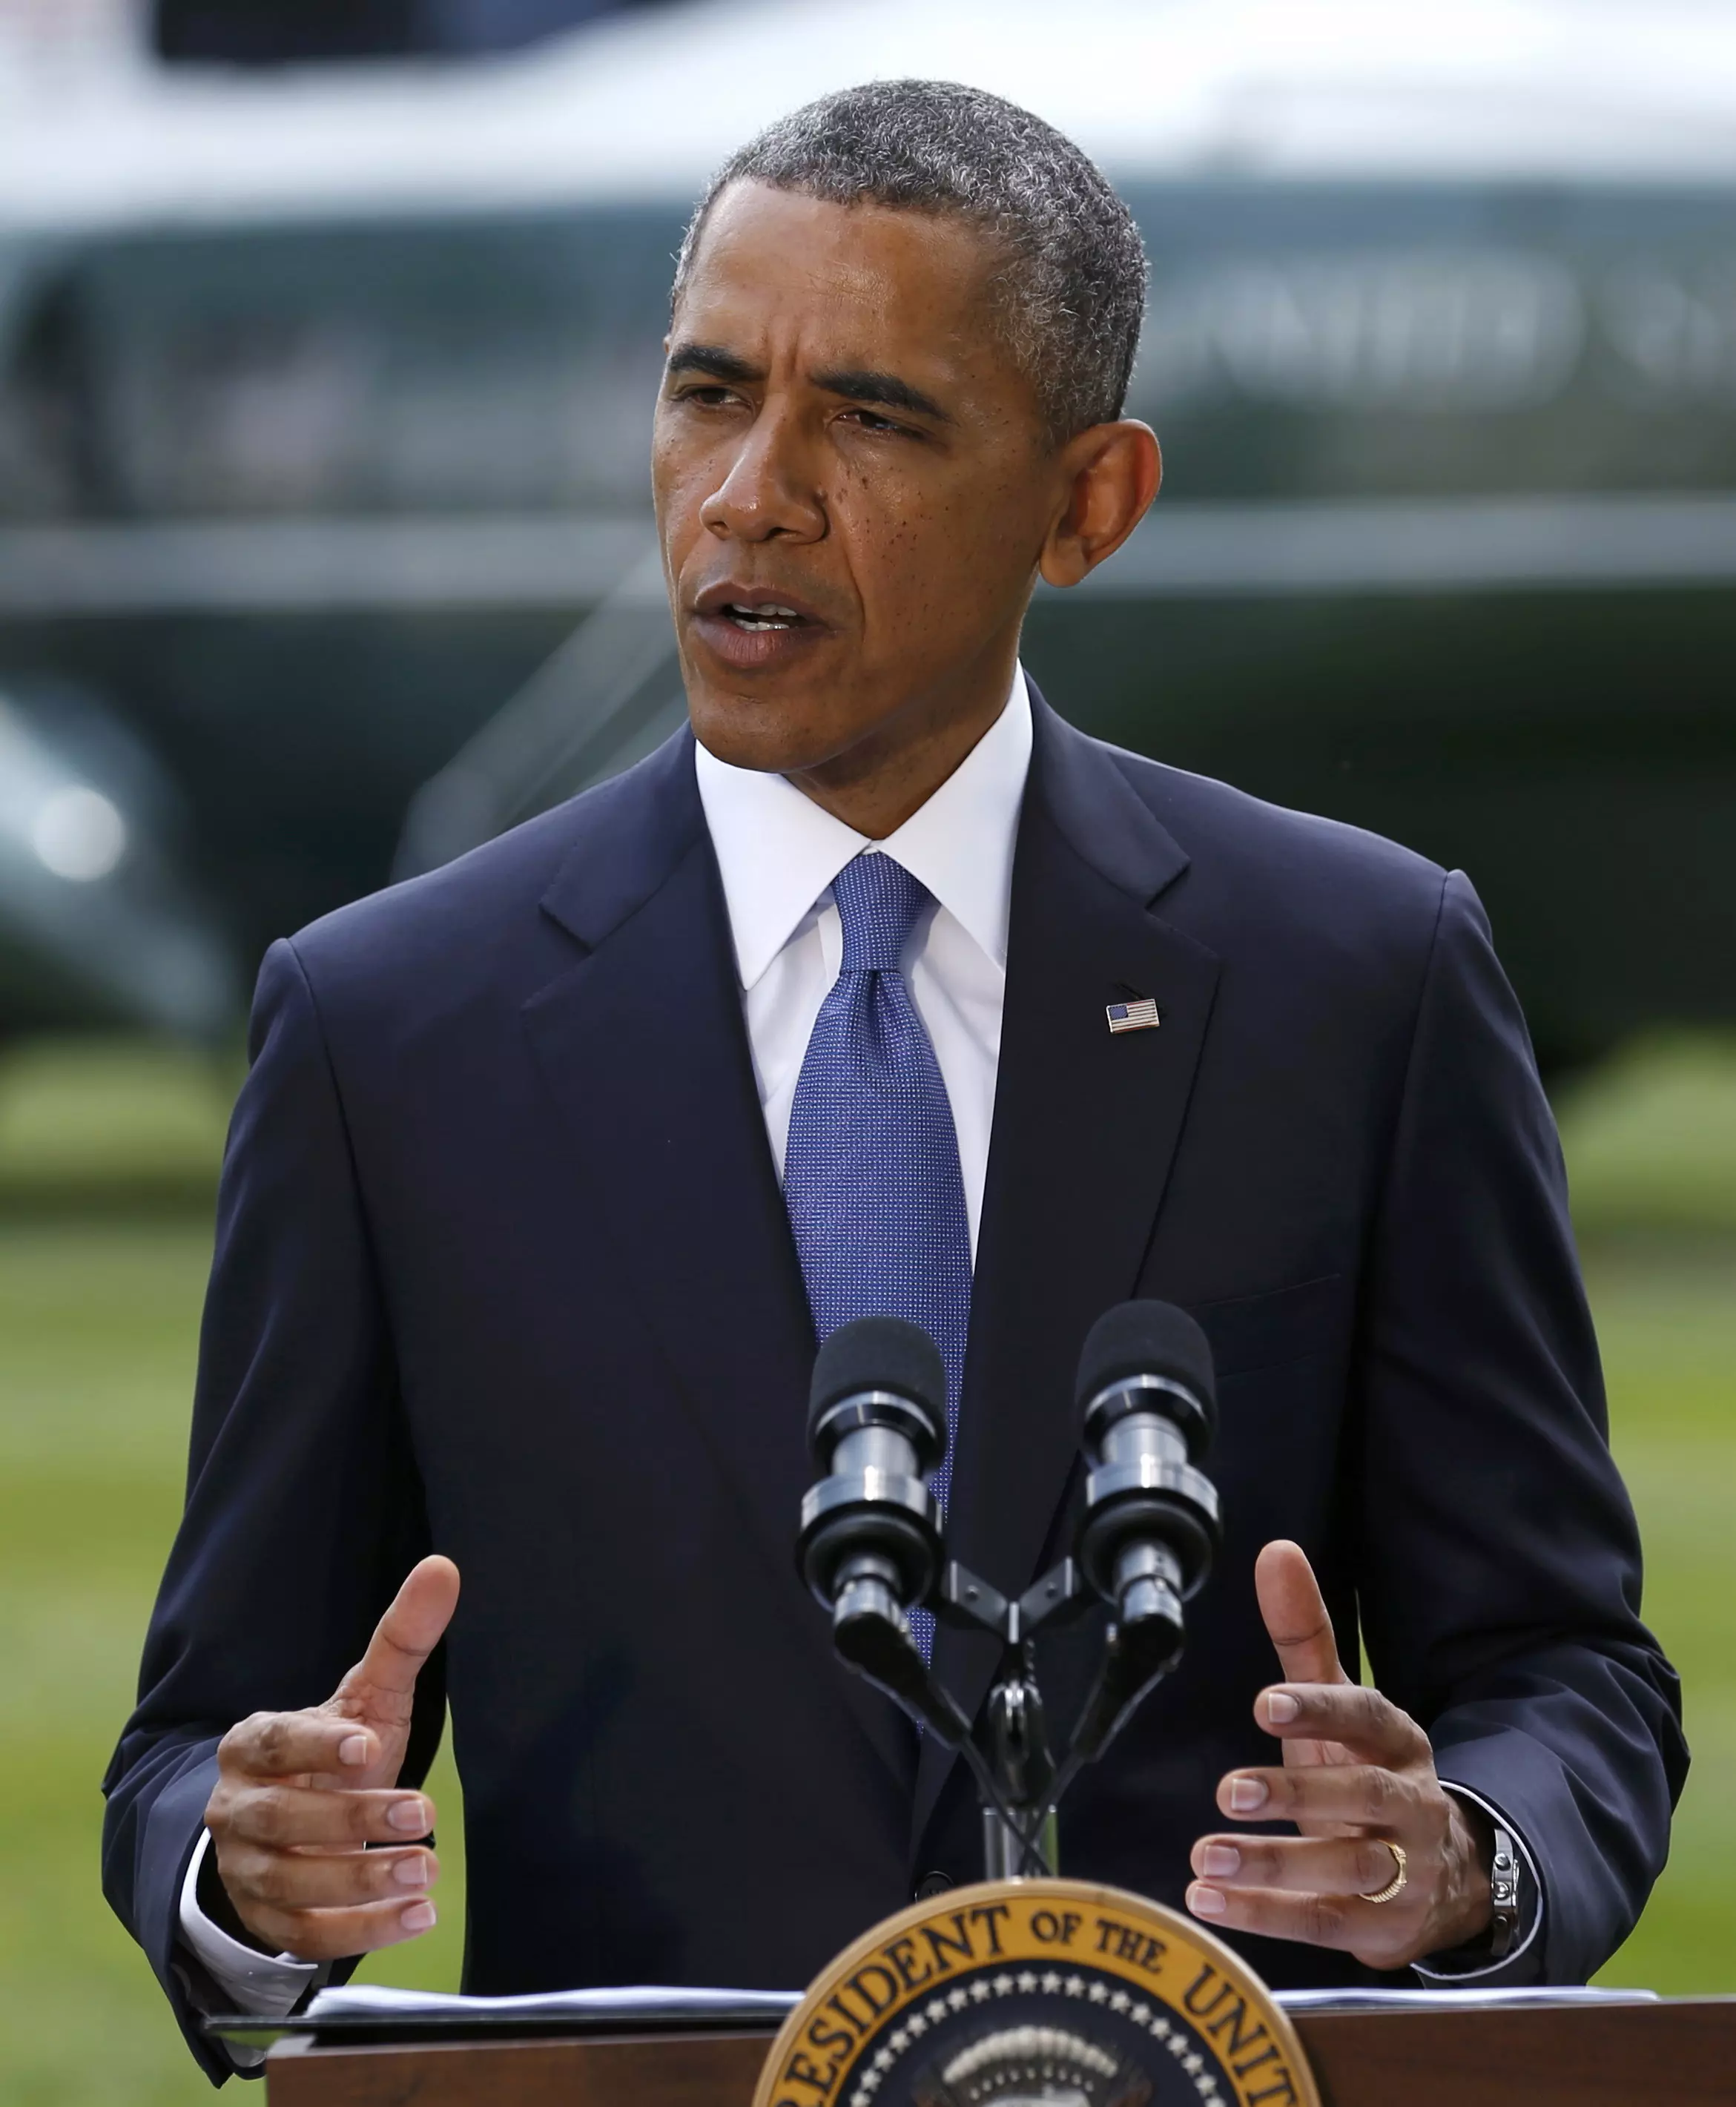 "ארצות הברית מודאגת מהאפשרות להסלמה נוספת". נשיא ארצות הברית, ברק אובמה